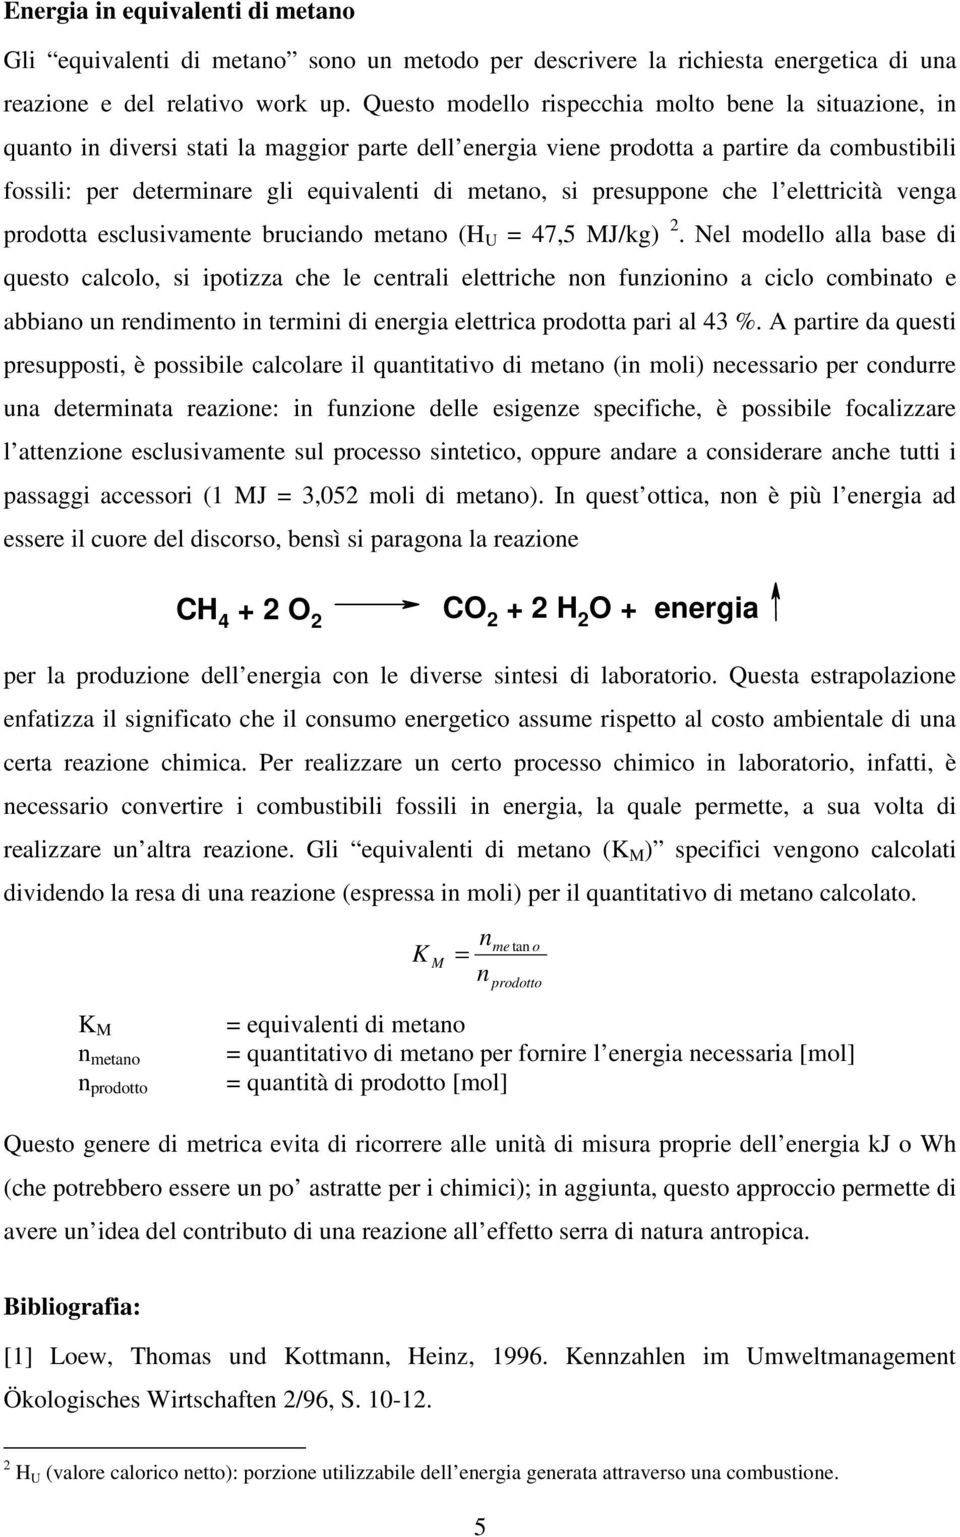 metano, si presuppone che l elettricità venga prodotta esclusivamente bruciando metano (H U 47,5 MJ/kg) 2.